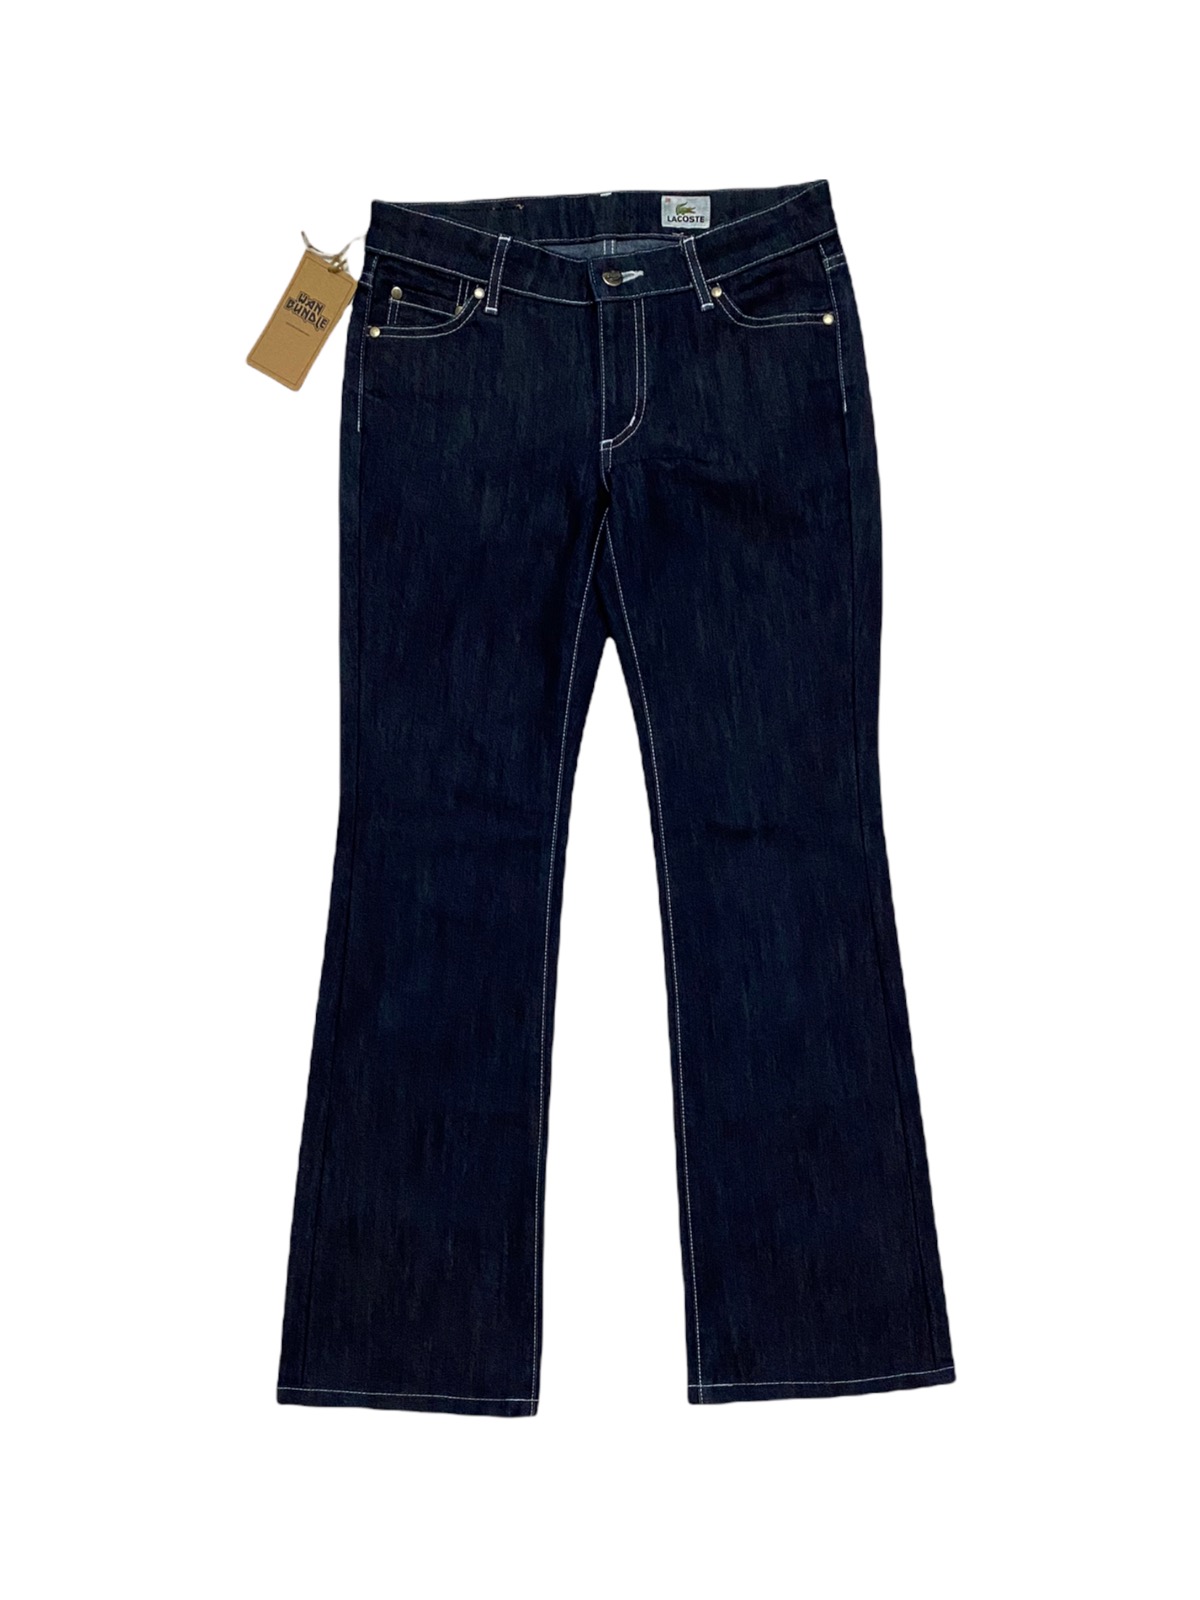 Women Lacoste Jeans Denim Made in Japan - 4